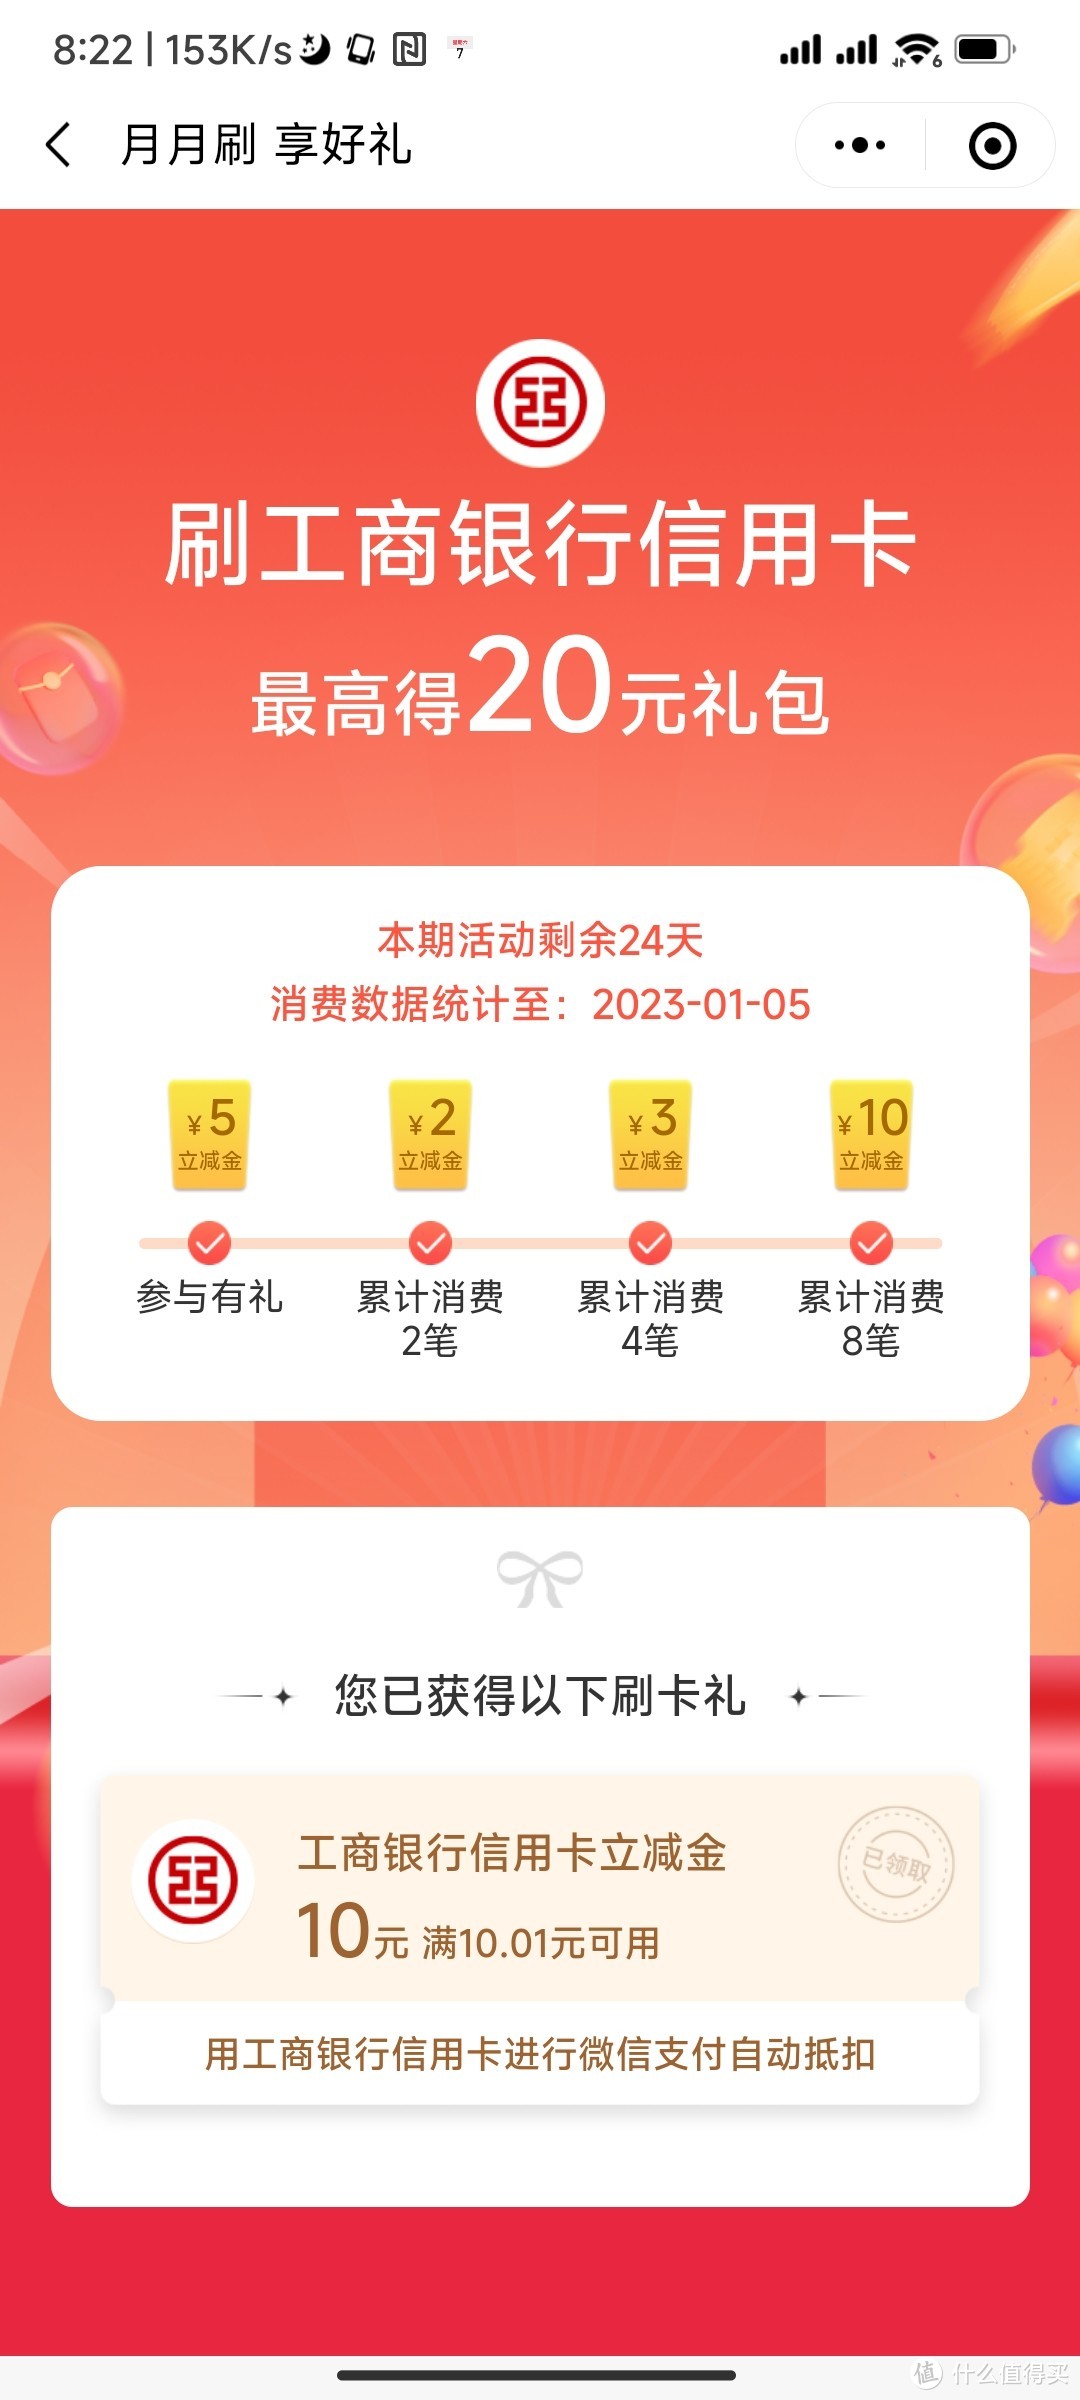 上海工行用户优惠①：月月刷立减金参与